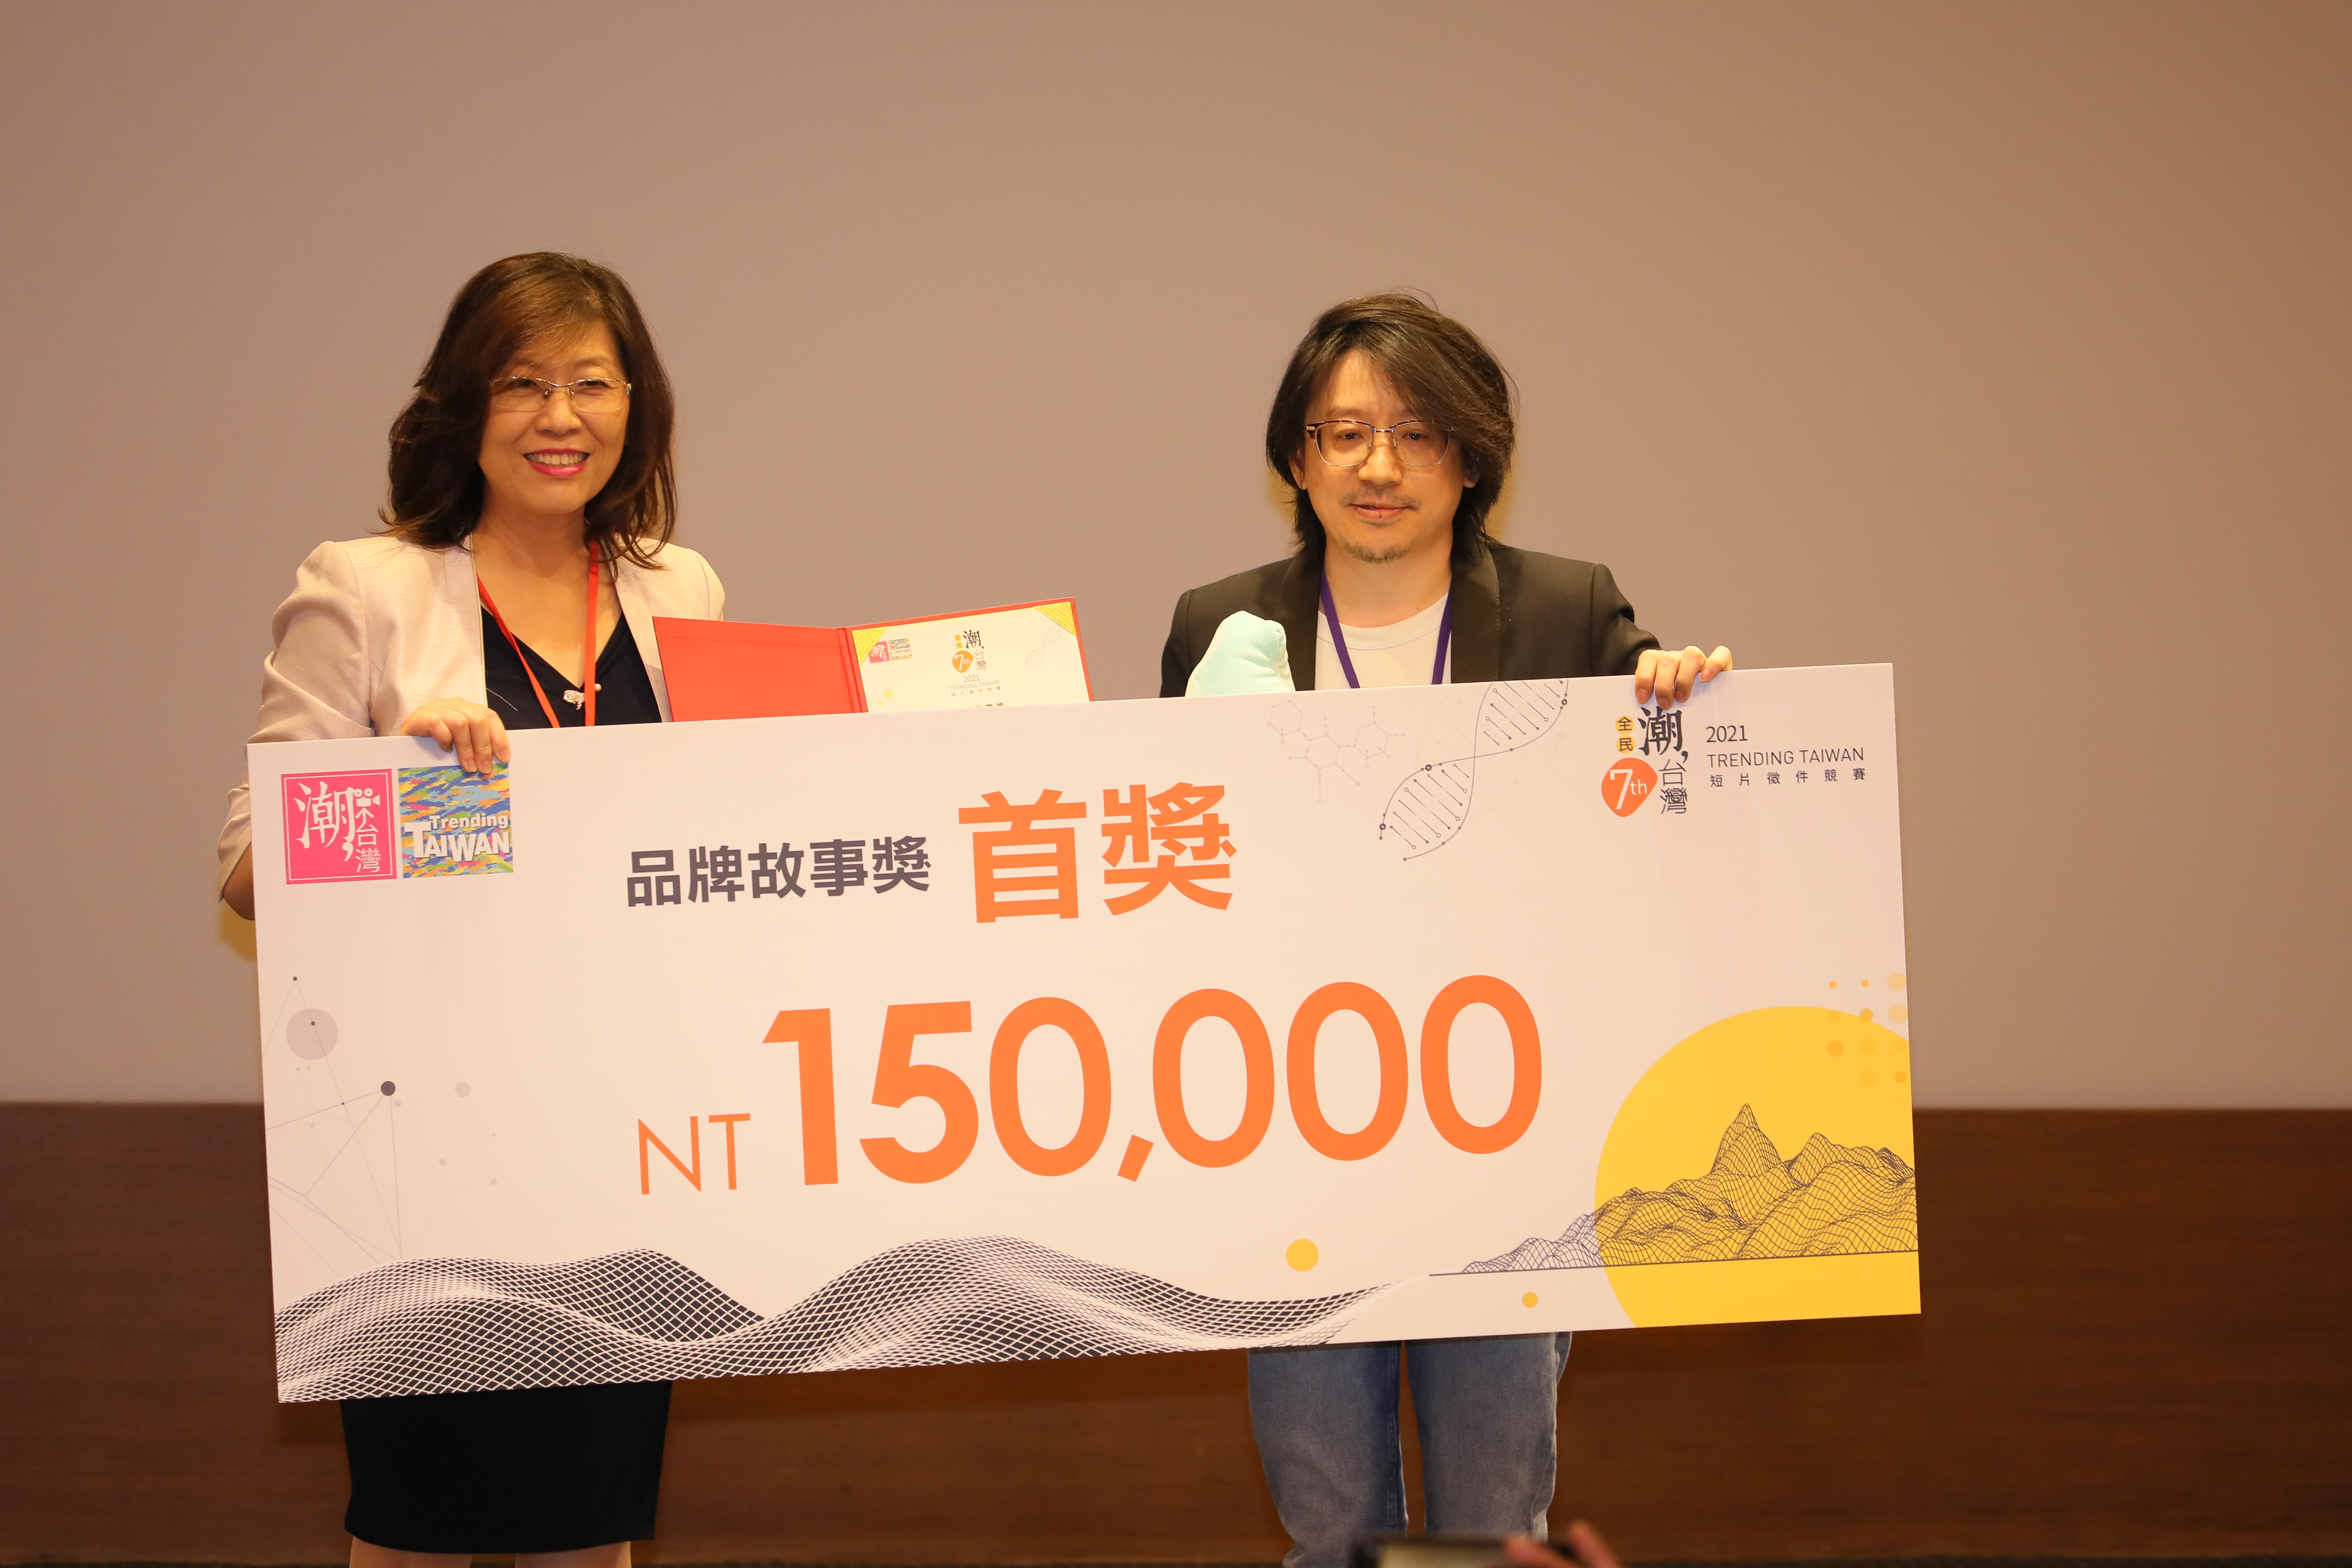 Cuộc thi phim ngắn năm nay bao gồm “Giải thưởng chủ đề sáng tạo” (Creative Category) cho phim có thời lượng 3 phút và “Giải thưởng câu chuyện thương hiệu” (Brand Story Category) cho phim có thời lượng 1 phút. (Nguồn ảnh: Bộ Ngoại giao Đài Loan)